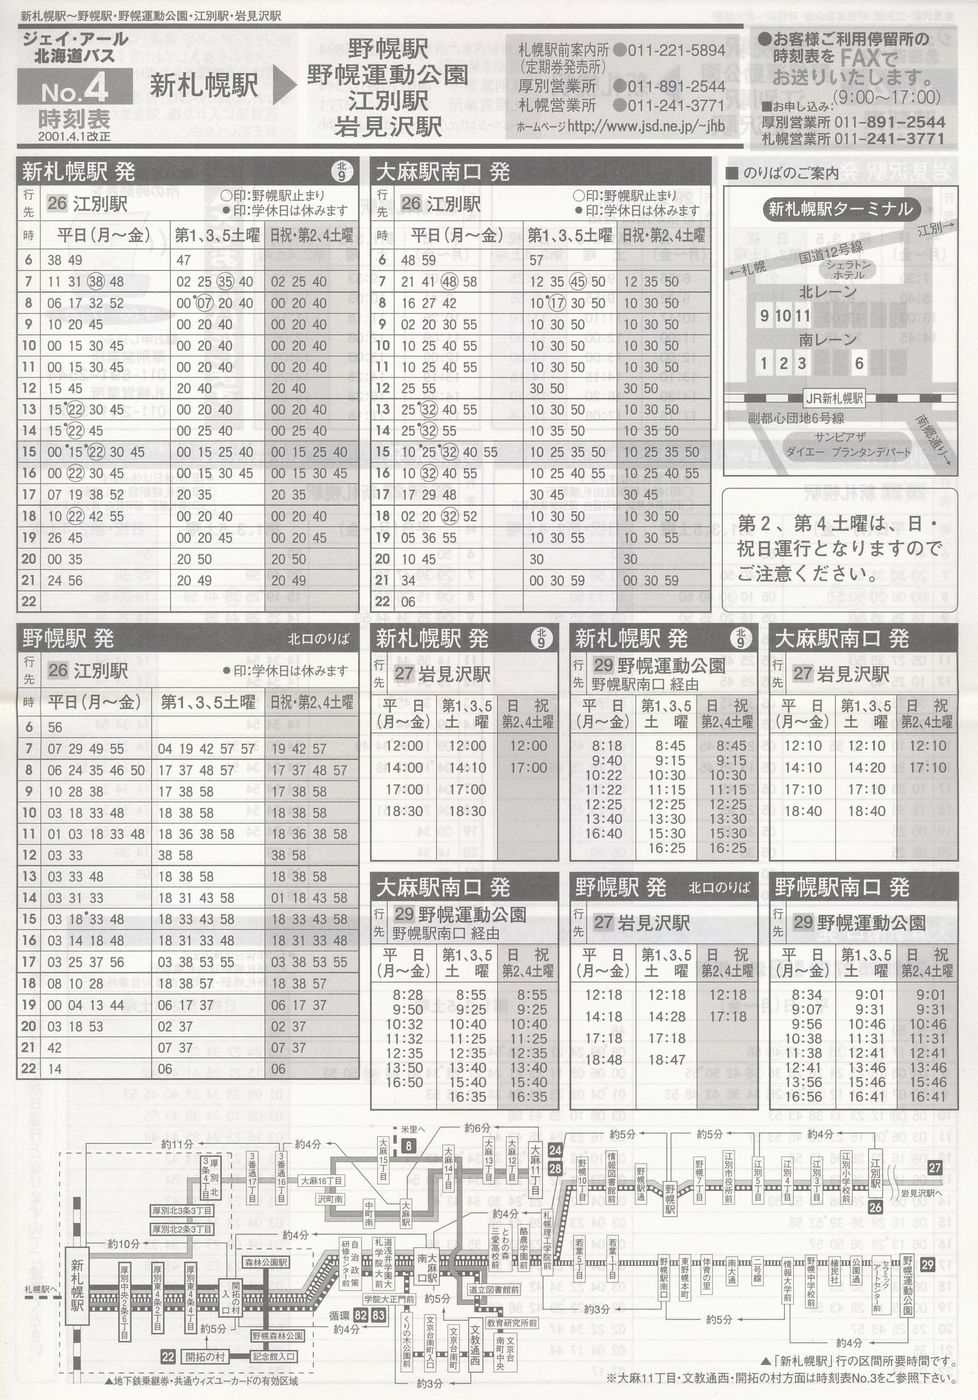 2001-04-01改正_ジェイ・アール北海道バス_空知線時刻表４裏面